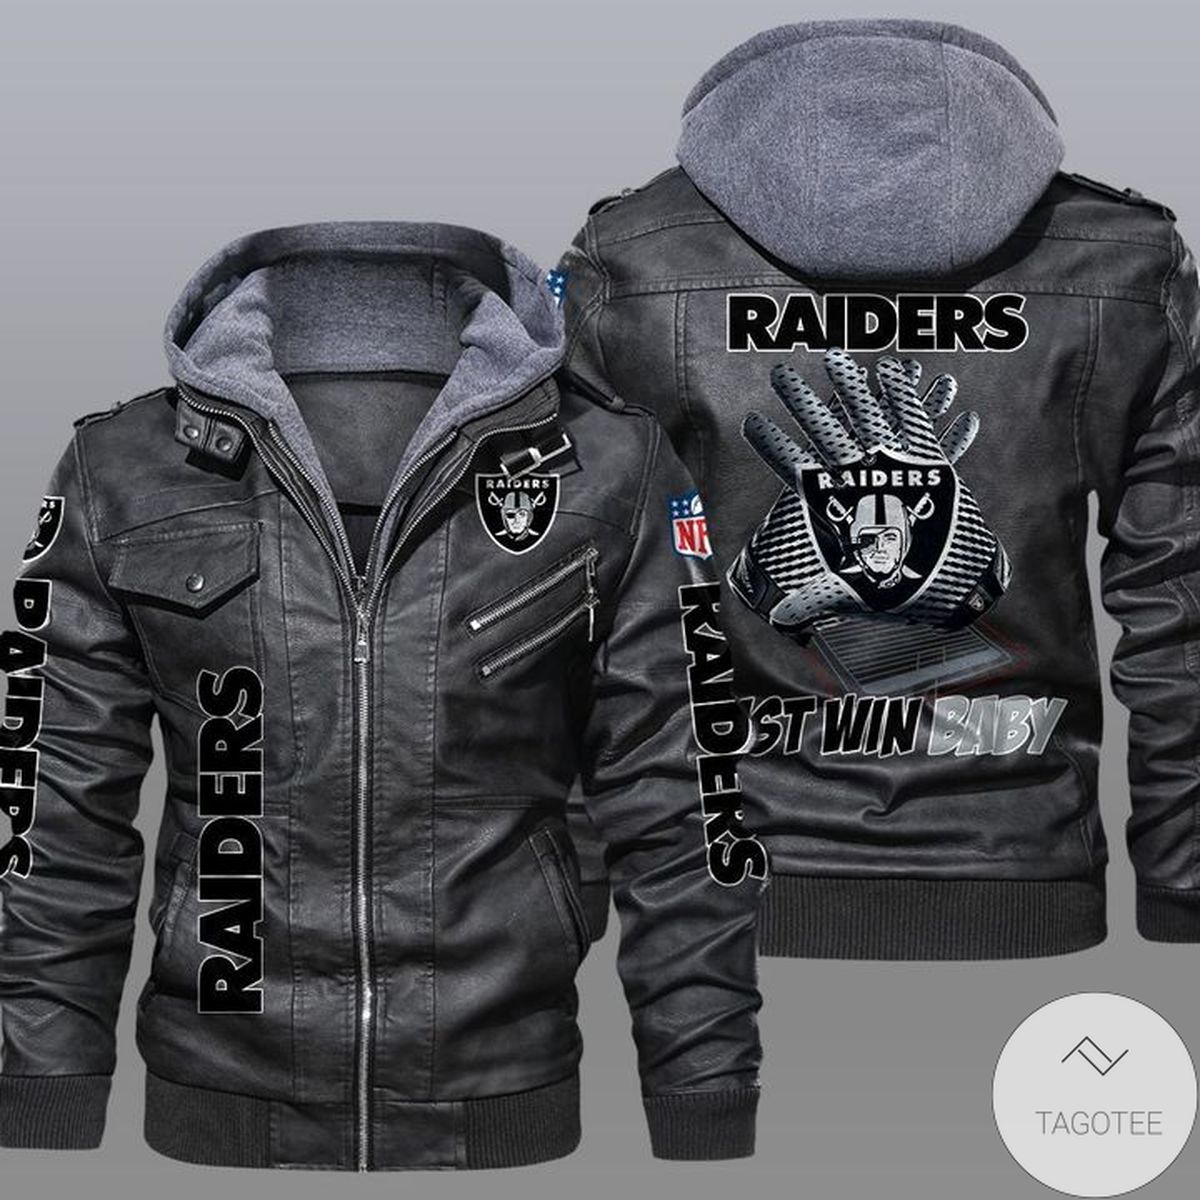 Las Vegas Raiders 2D Leather Jacket